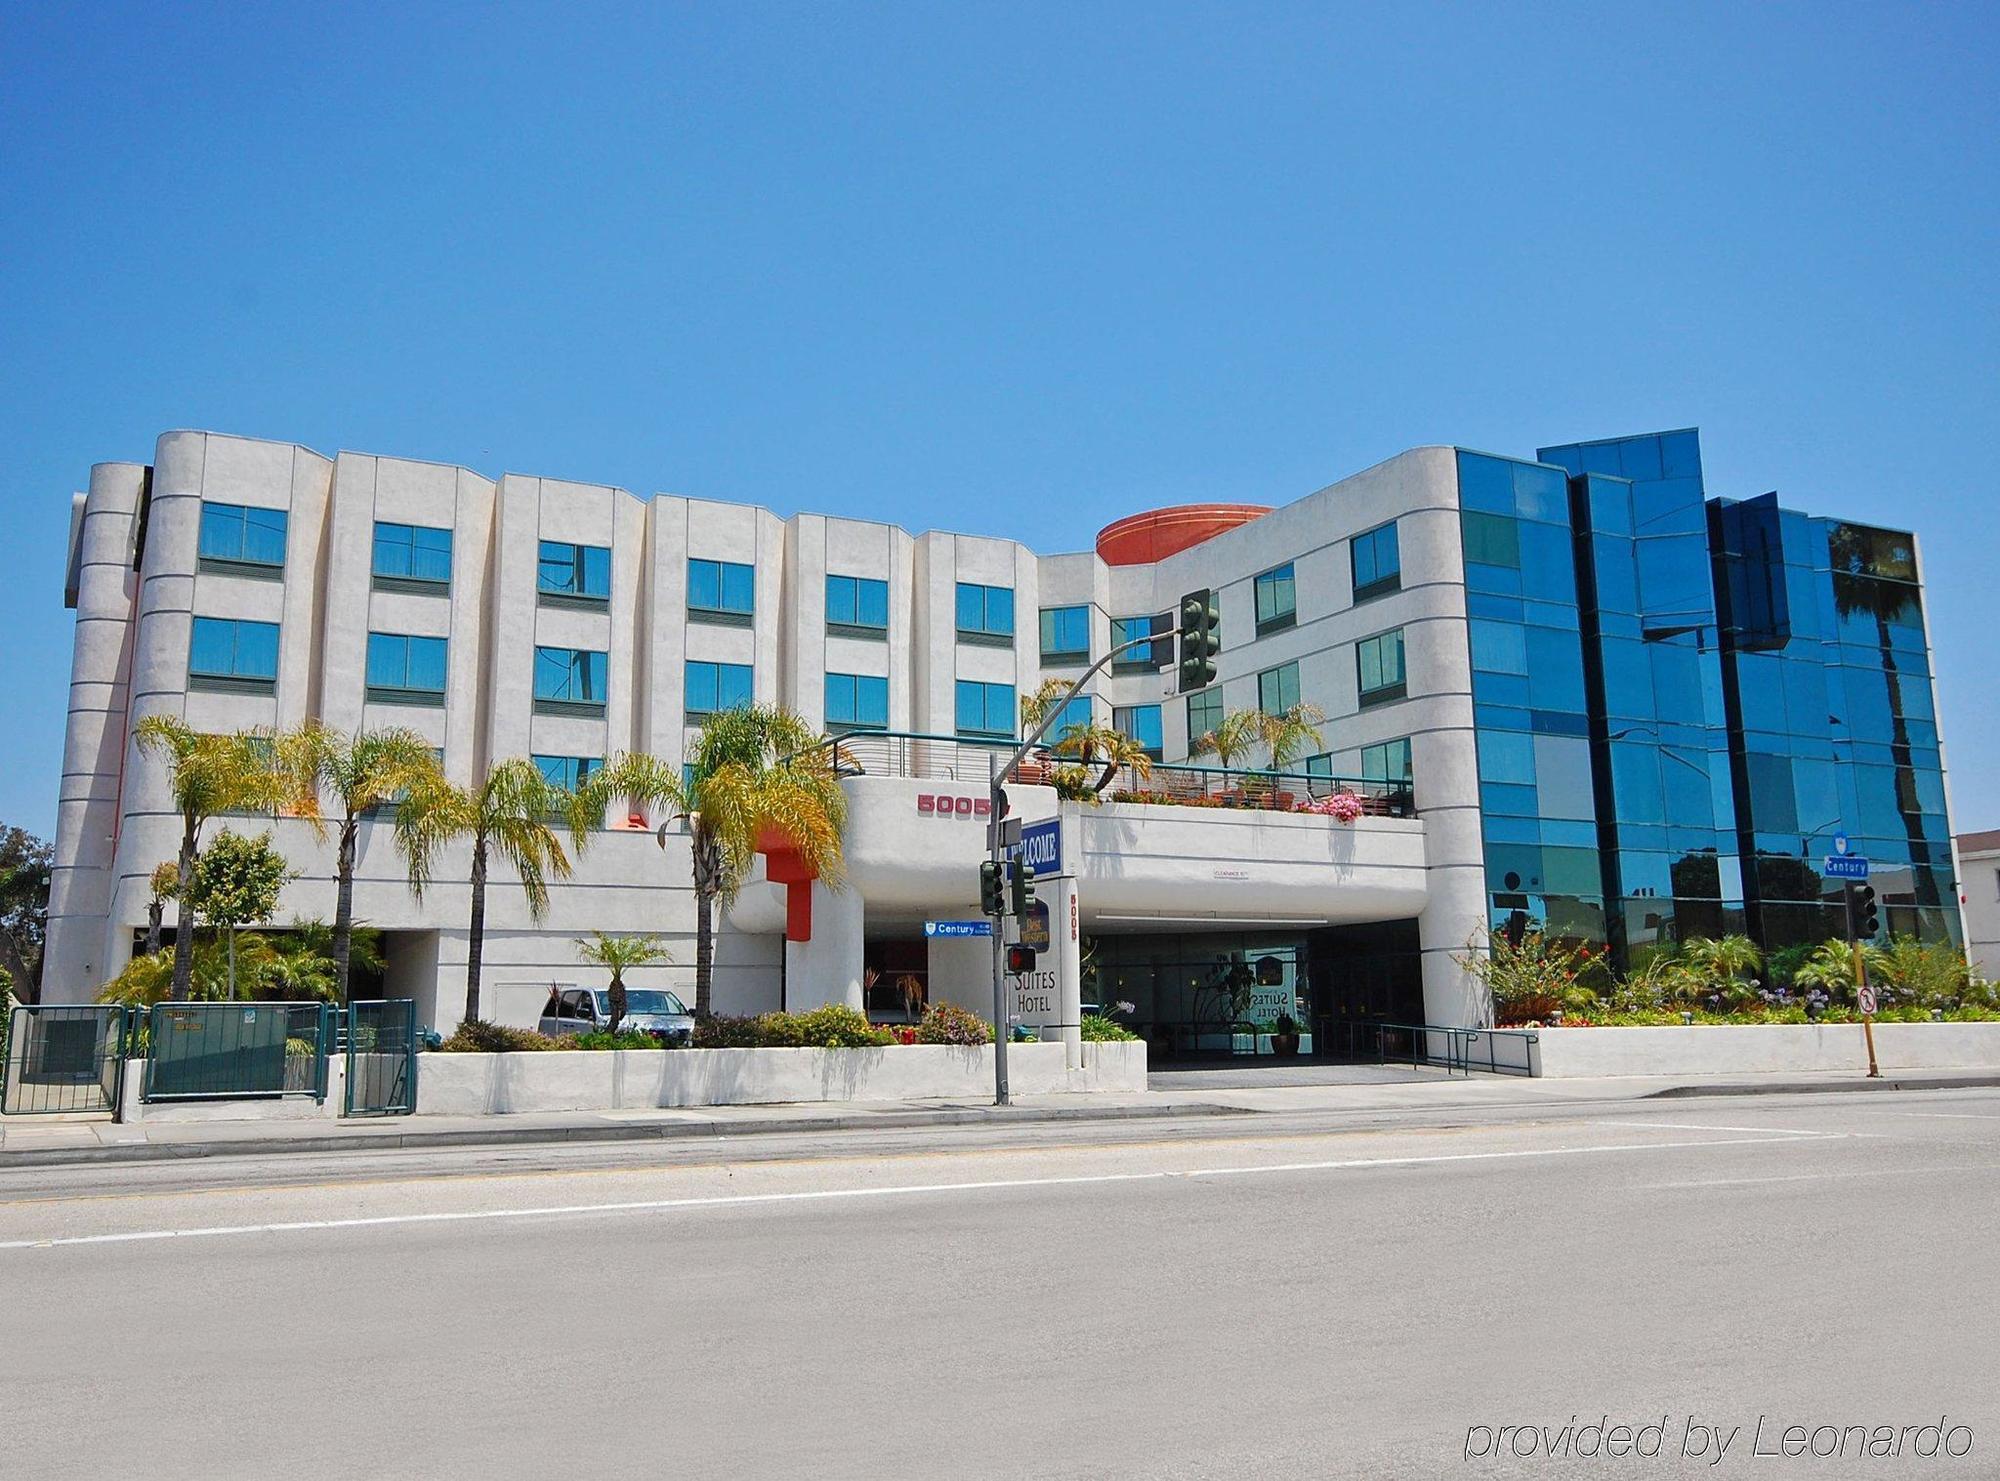 Best Western Plus Suites Hotel - Los Angeles Lax Airport Inglewood Buitenkant foto